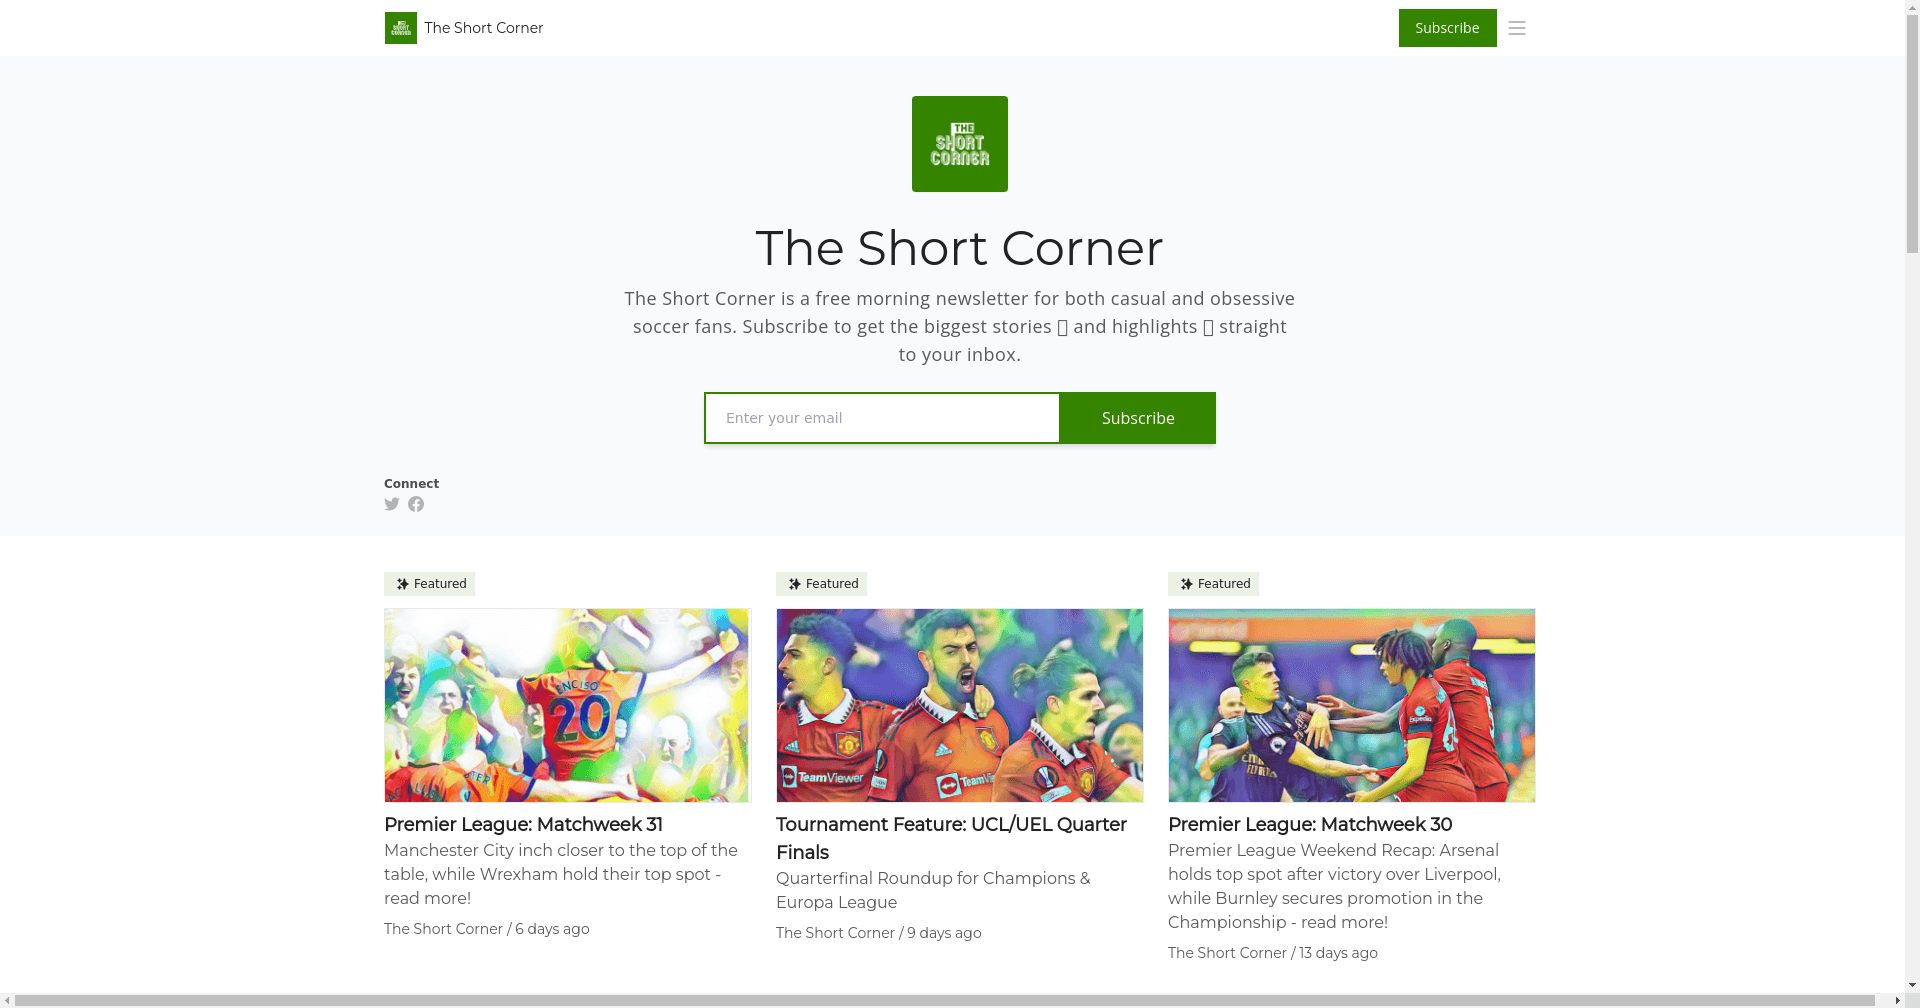 The Short Corner homepage